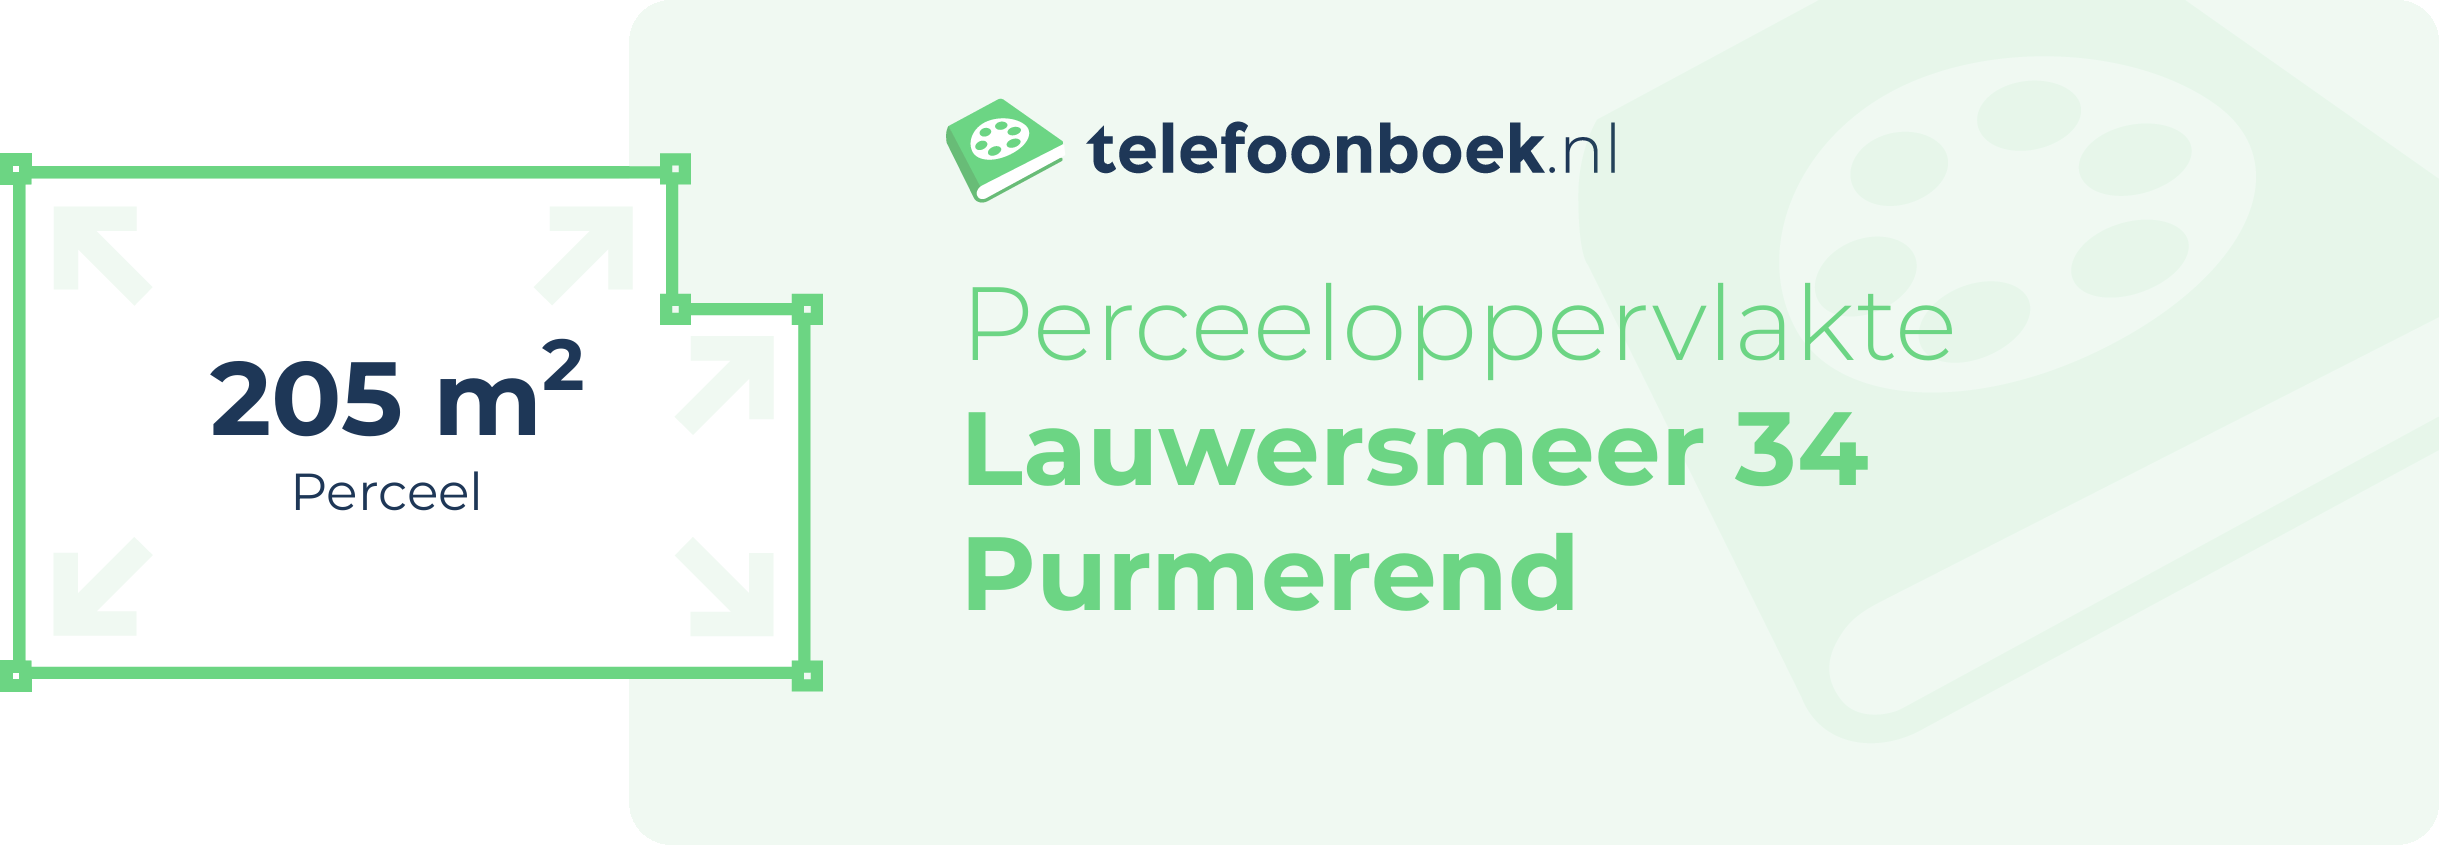 Perceeloppervlakte Lauwersmeer 34 Purmerend